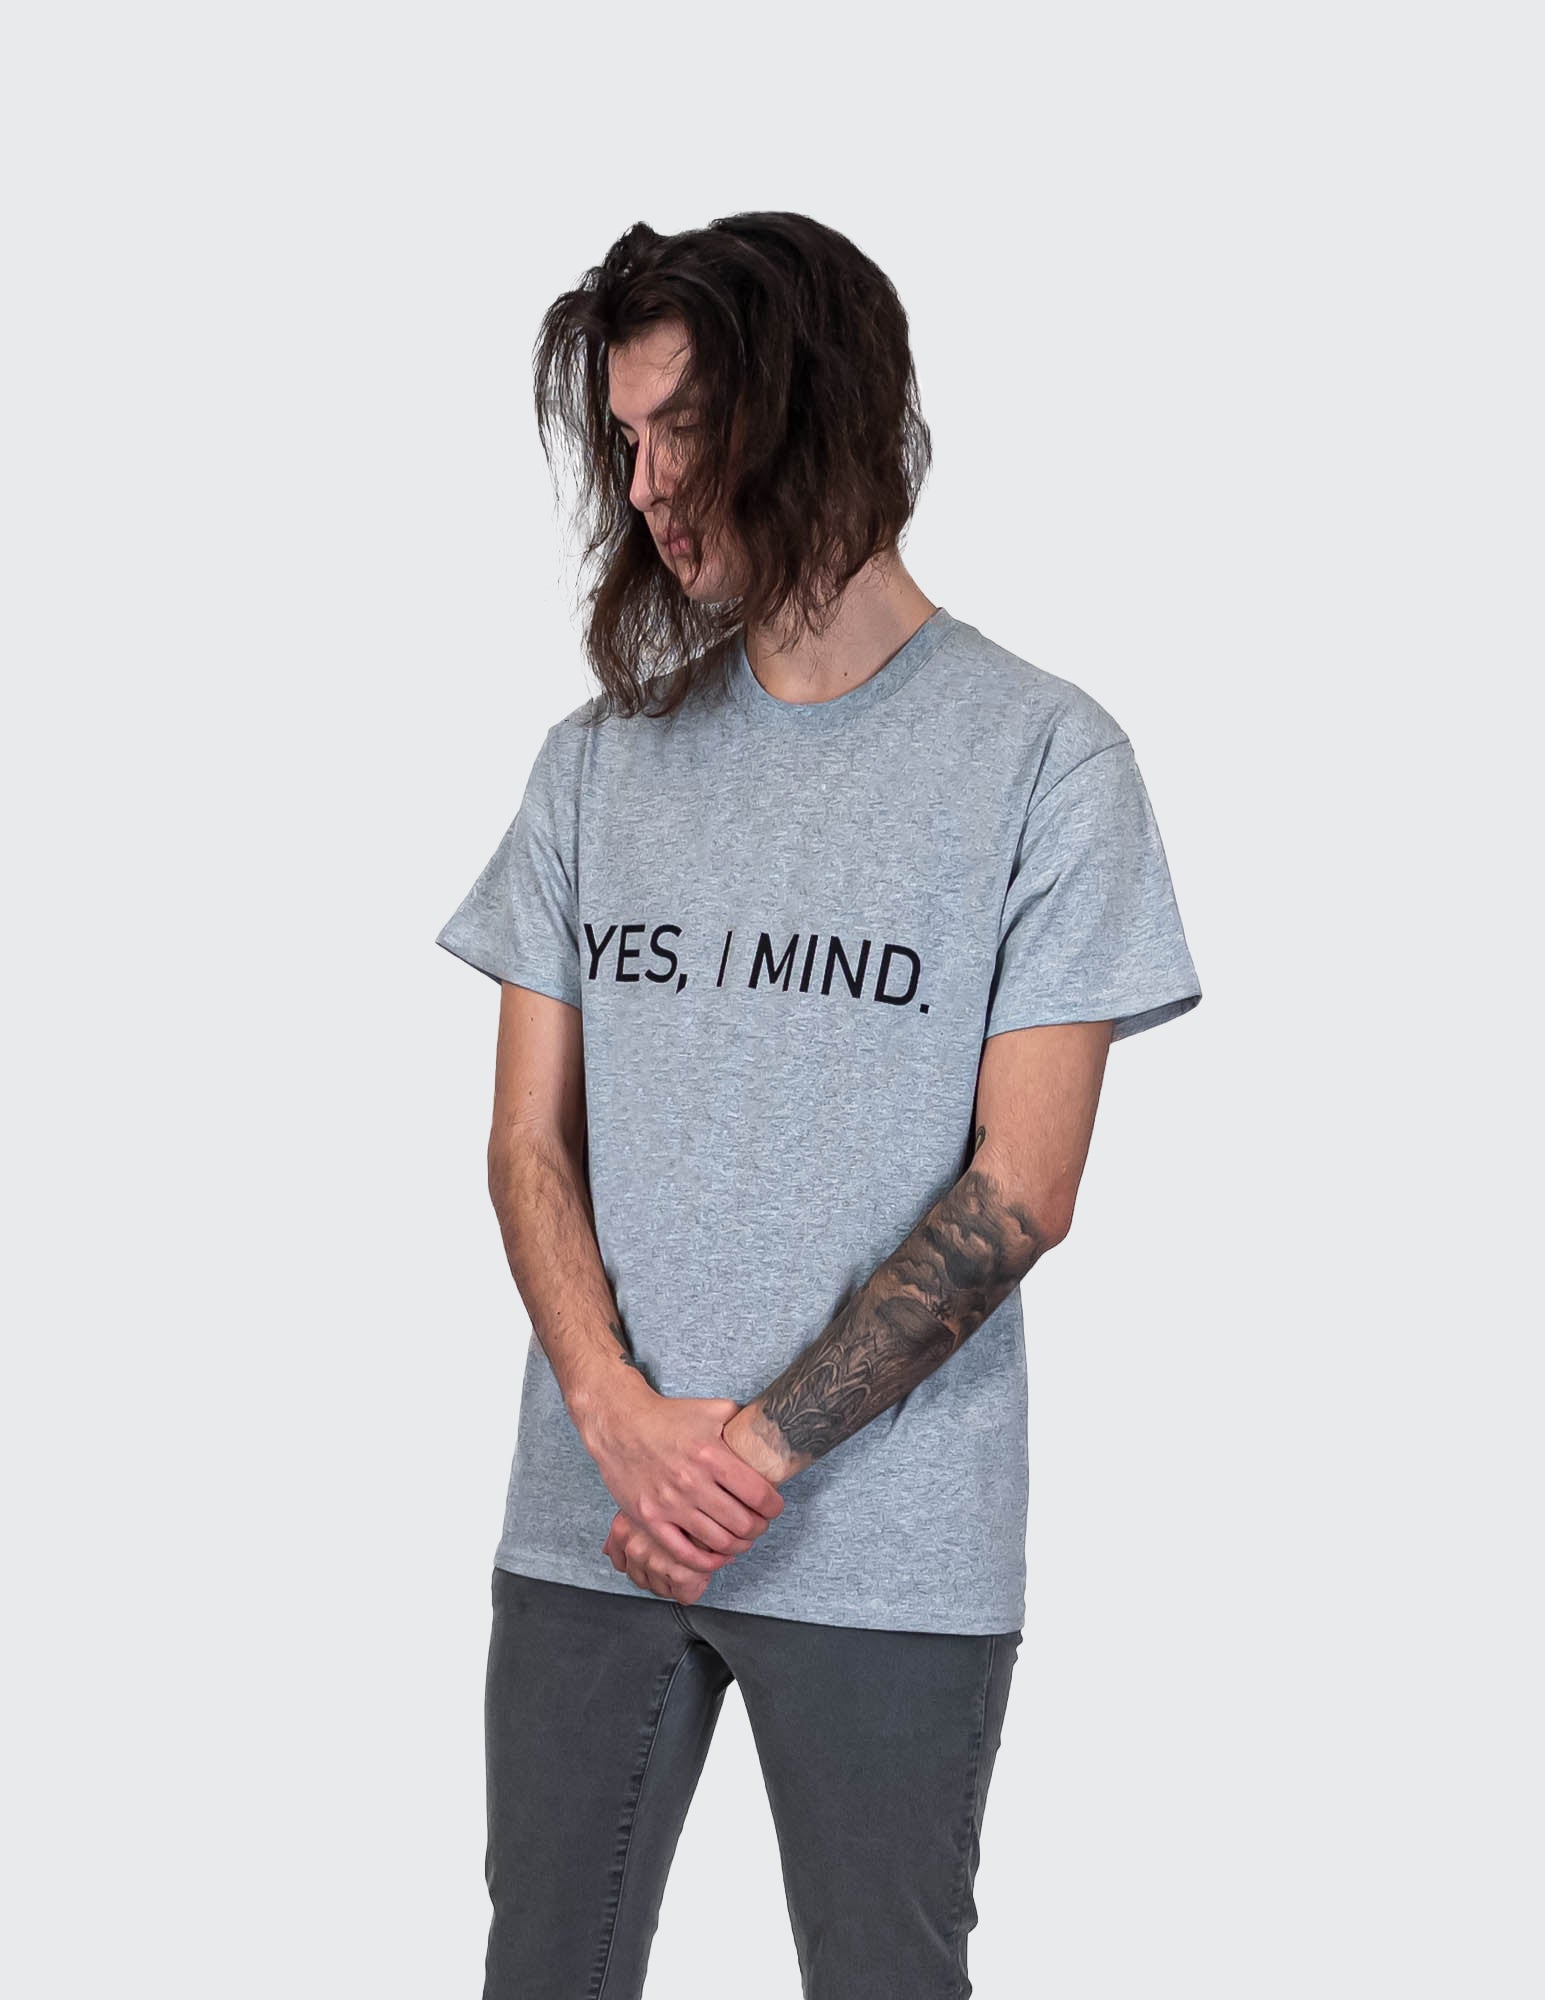 Yes, I Mind.